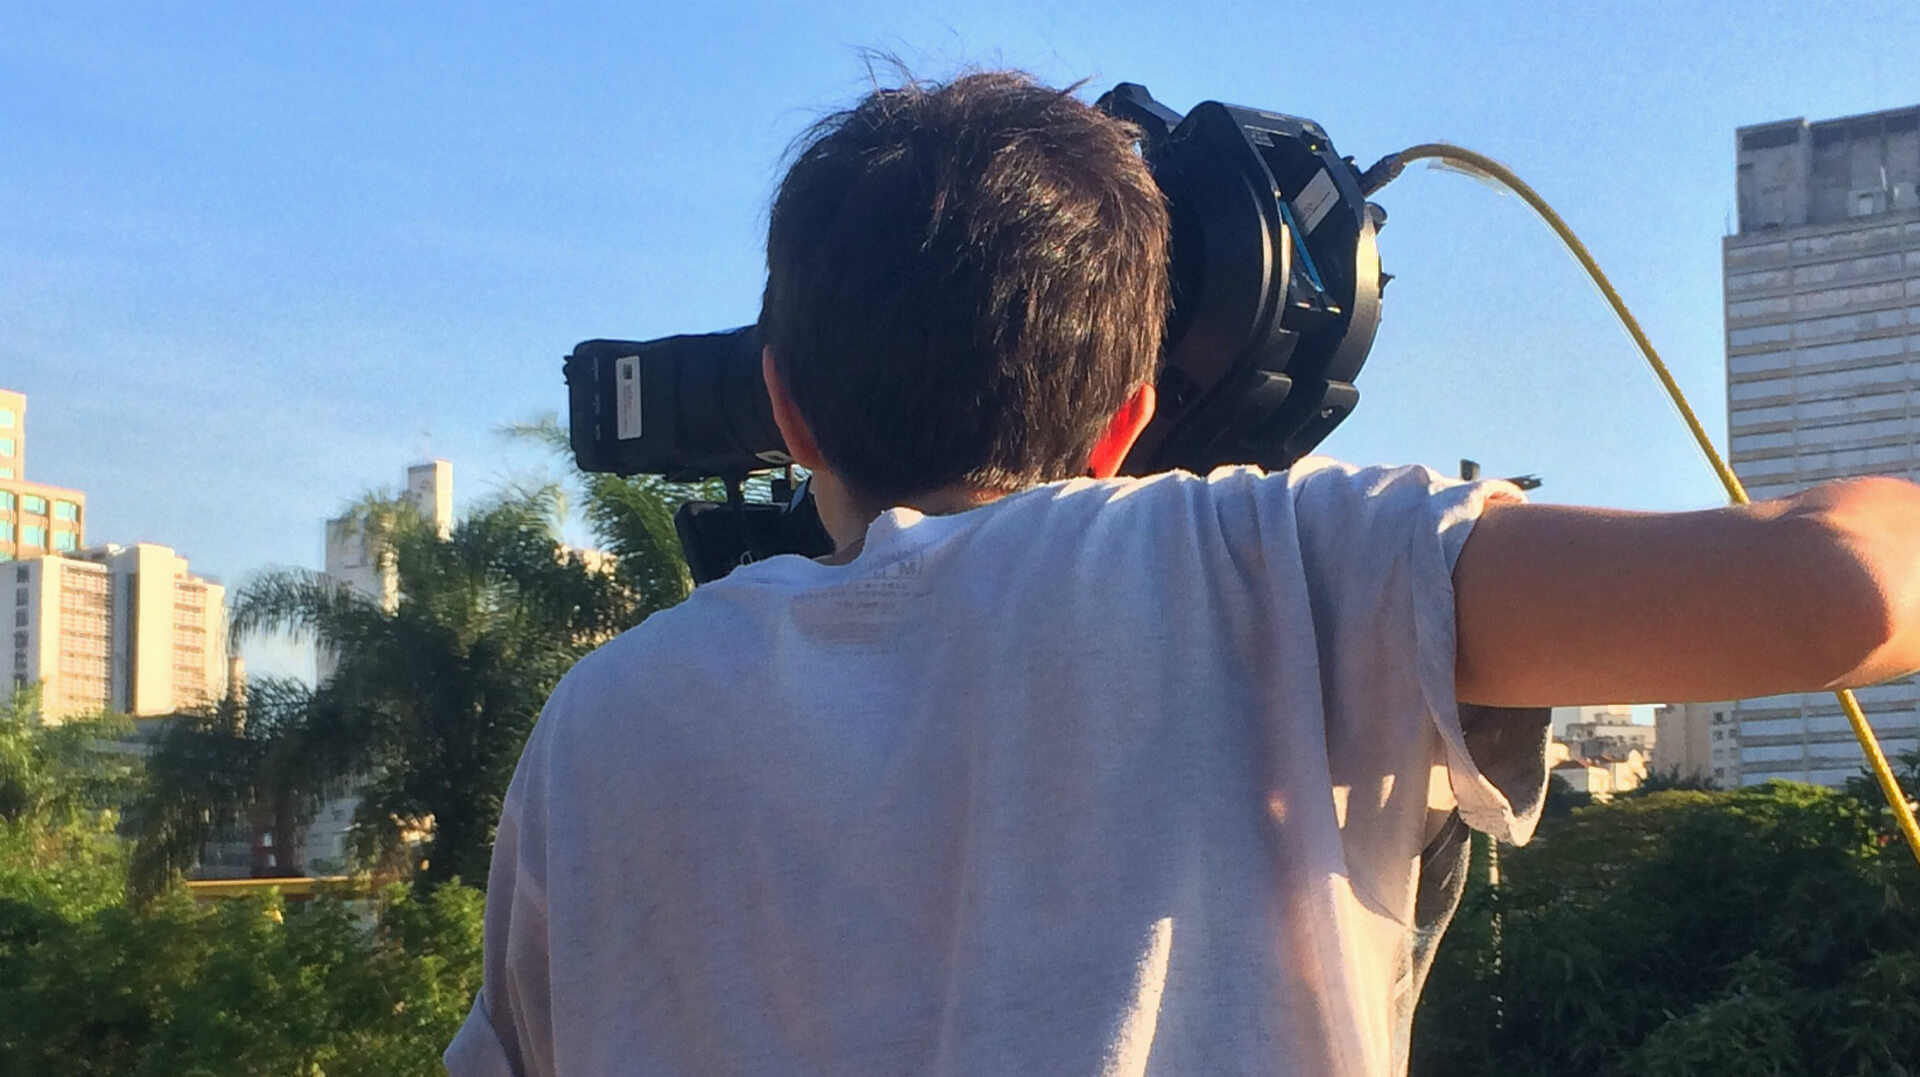 “Pinto não é fotômetro”: um relato sobre mulheres diretoras de fotografia no Brasil